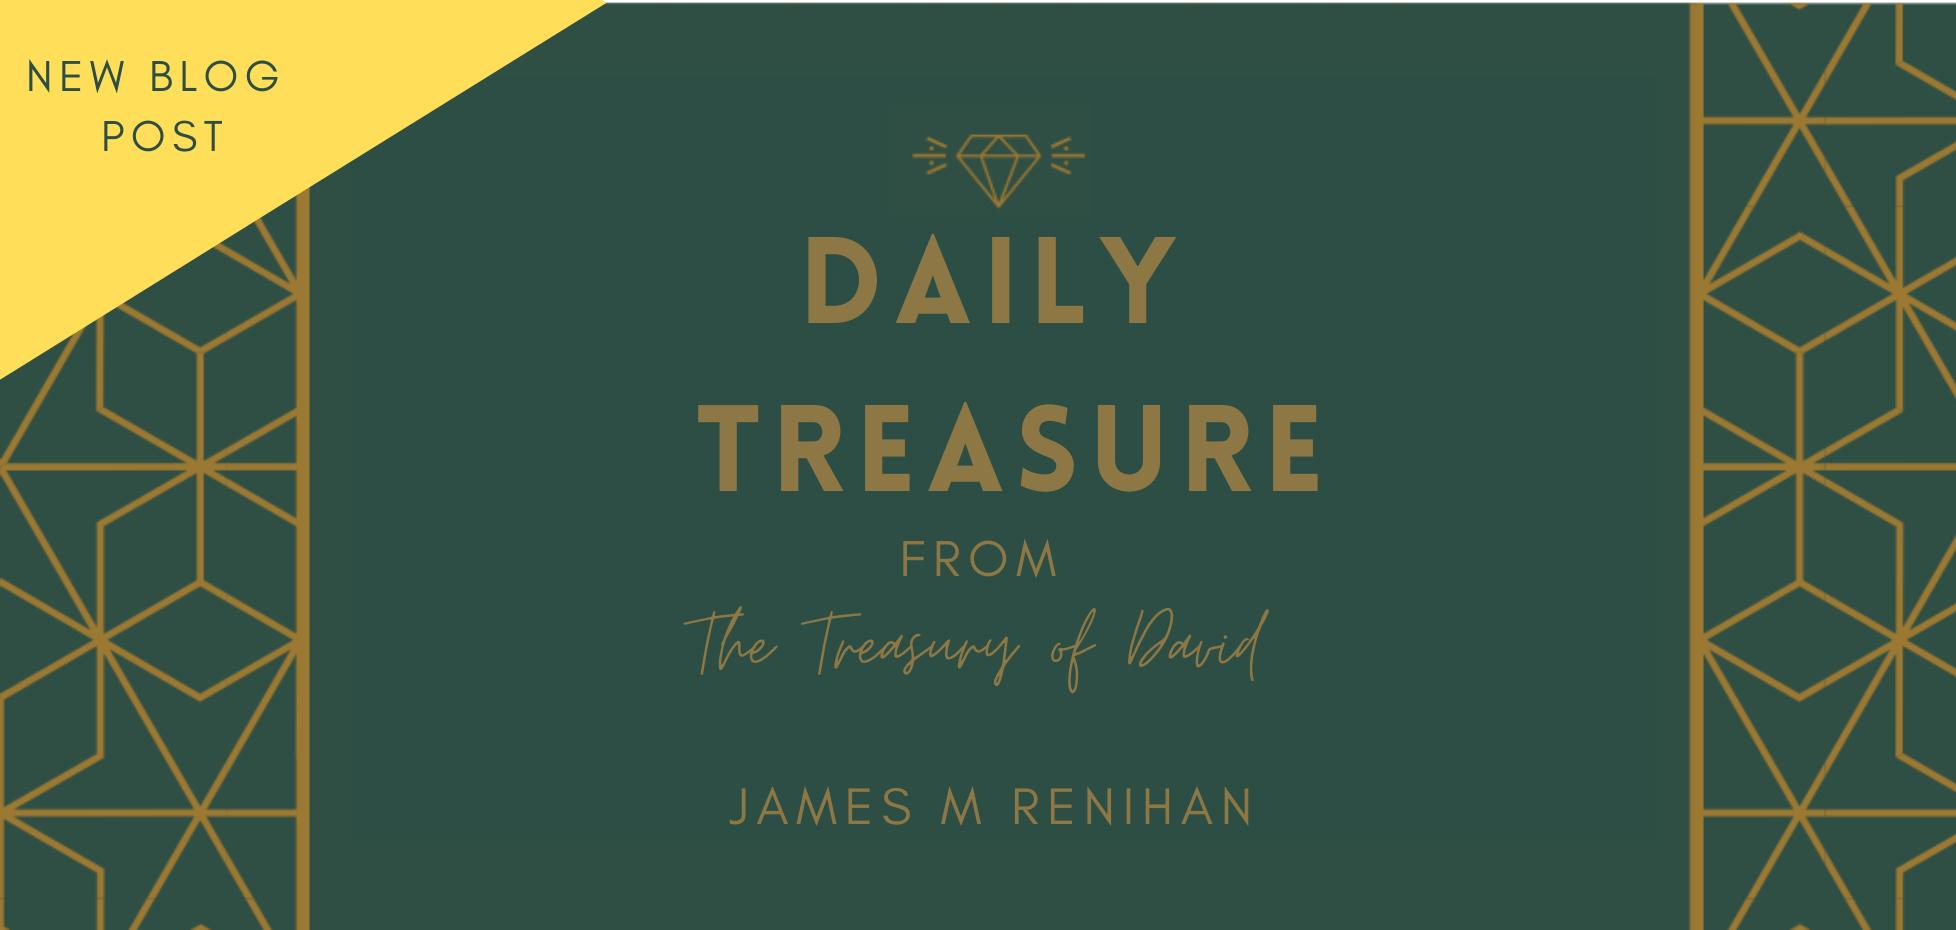 Daily Treasure from Treasury of David